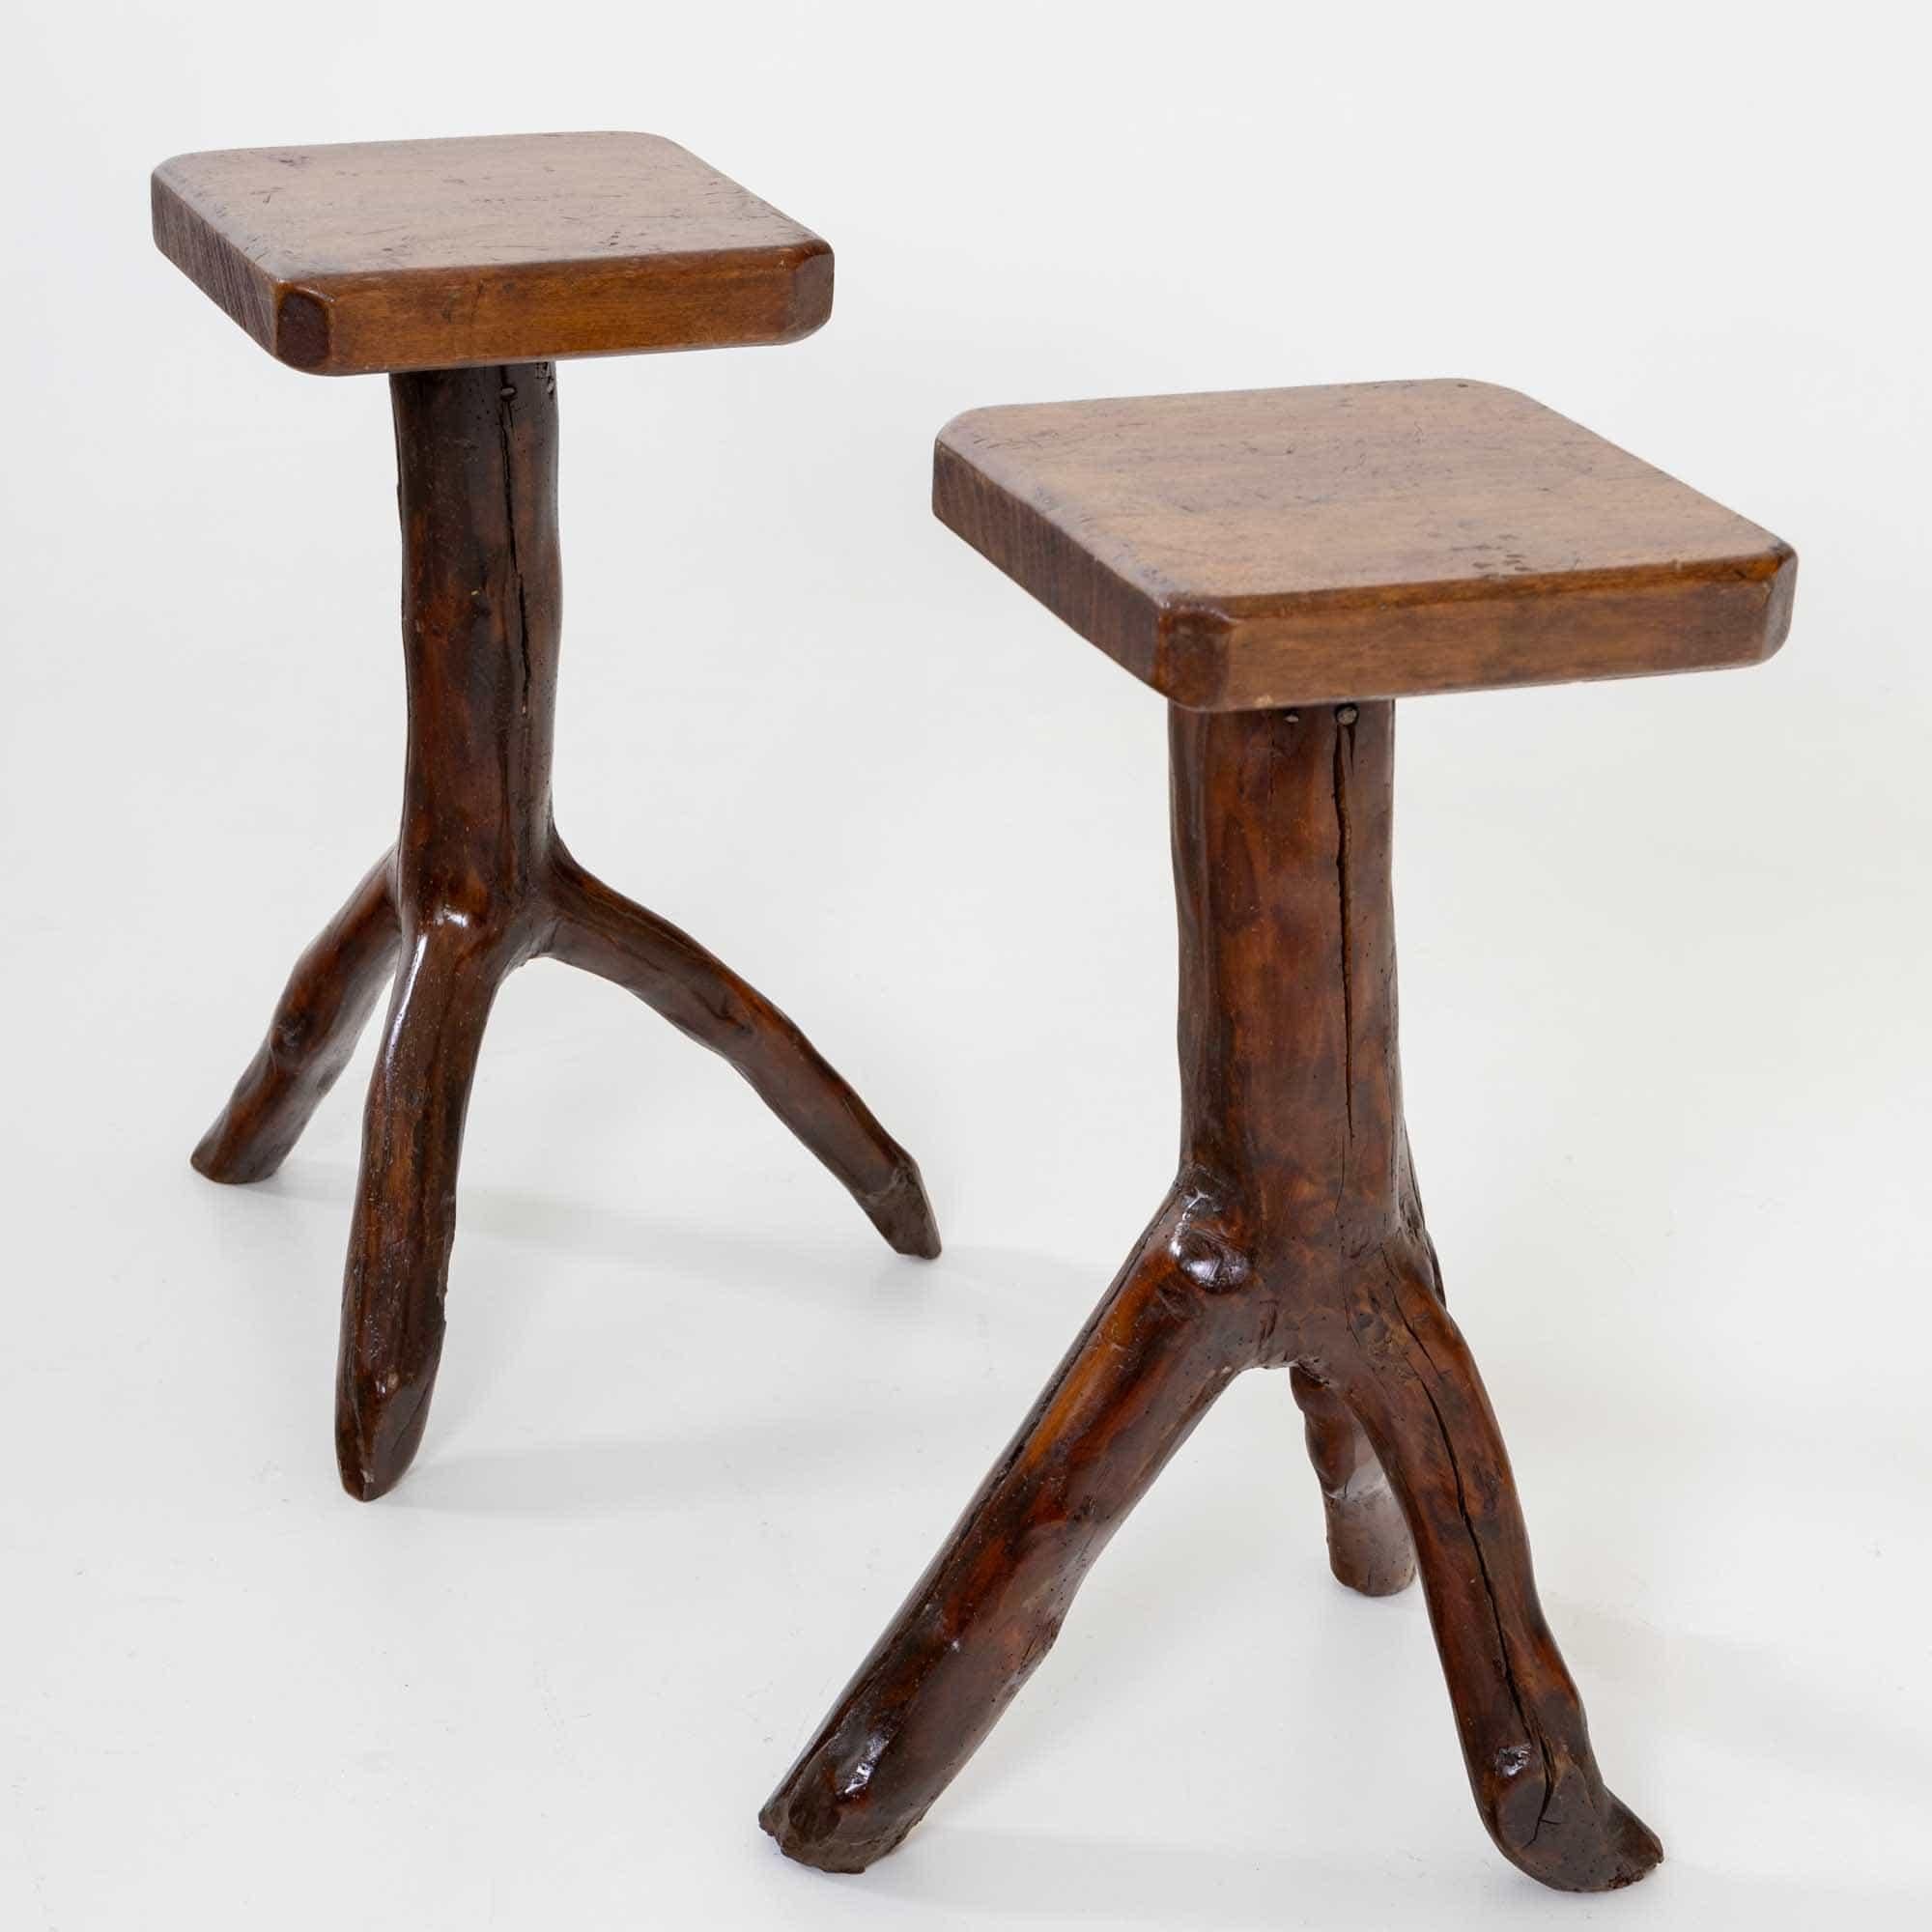 Ein Paar Beistelltische mit Tischplatten von 32 x 30 cm. Die dreibeinigen Untergestelle der Tische sind aus natürlichen Ästen gefertigt und wurden glatt poliert und gewachst.